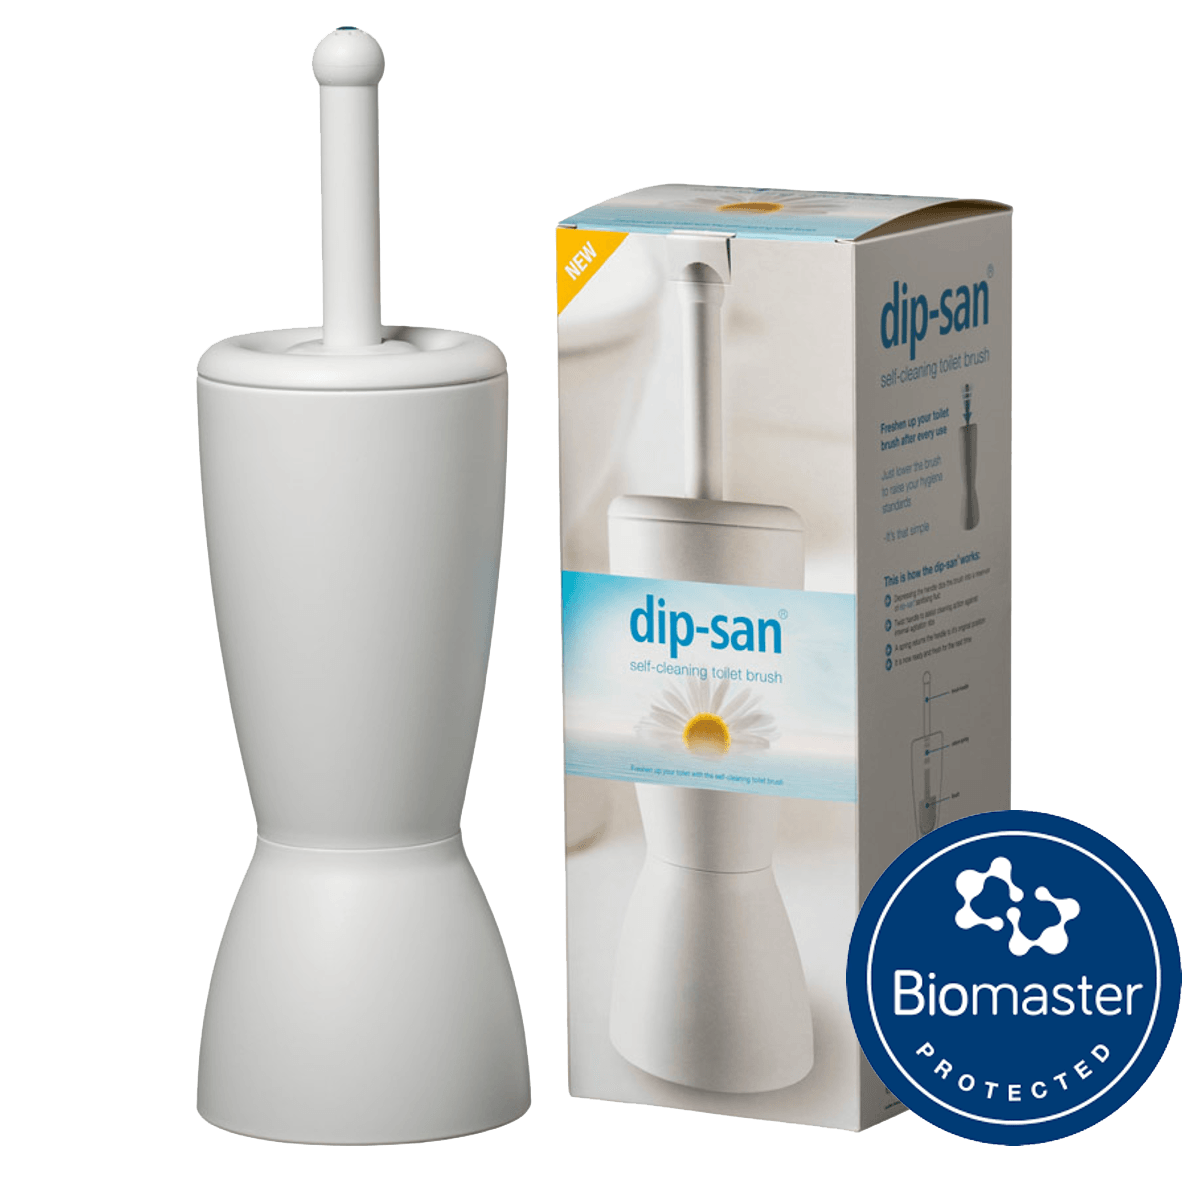 Dip-San Toilet Brush Biomaster Technology